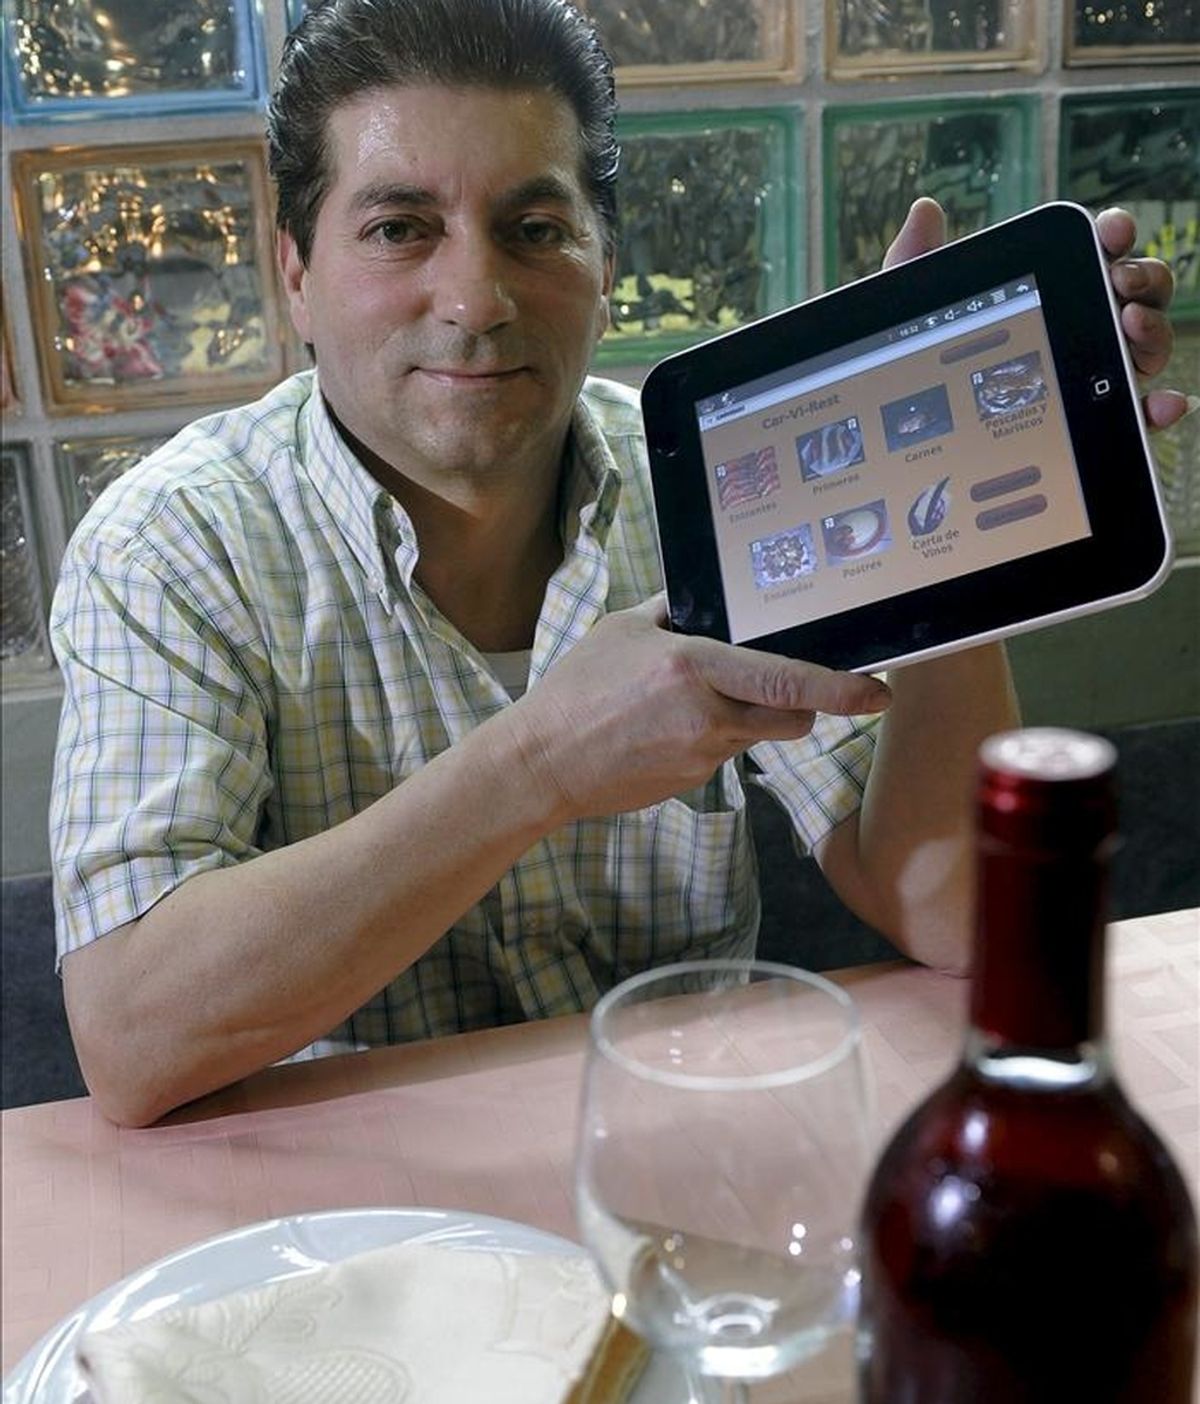 Una empresa de Valladolid ha diseñado una carta virtual para bares y restaurantes, una tableta multimedia que puede sustituir a los tradicionales menús en papel, con ventajas como la posibilidad de ver cómo es cada plato antes de que llegue a la mesa. A partir del viejo dicho de "comer con la vista", al empresario Cipriano Bote le surgió la idea de diseñar esta carta virtual "de opciones ilimitadas". EFE